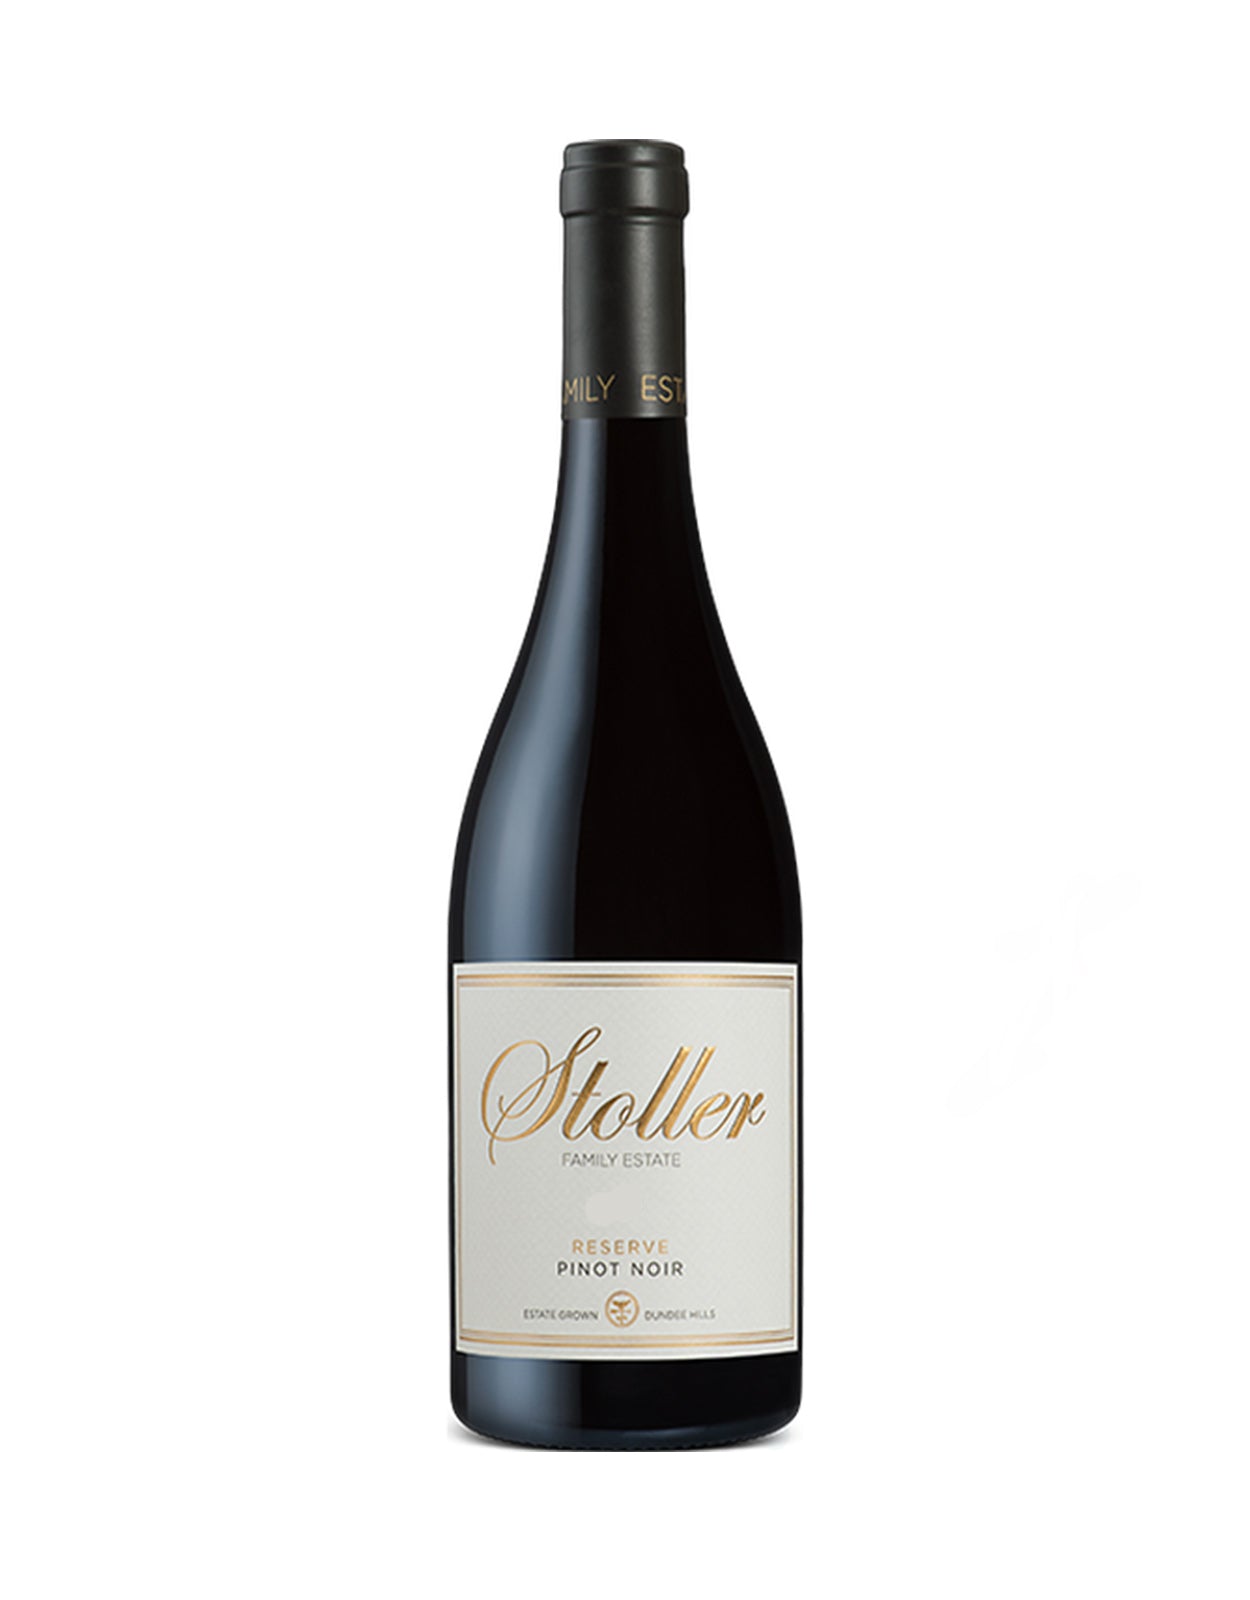 Stoller Pinot Noir Reserve 2019